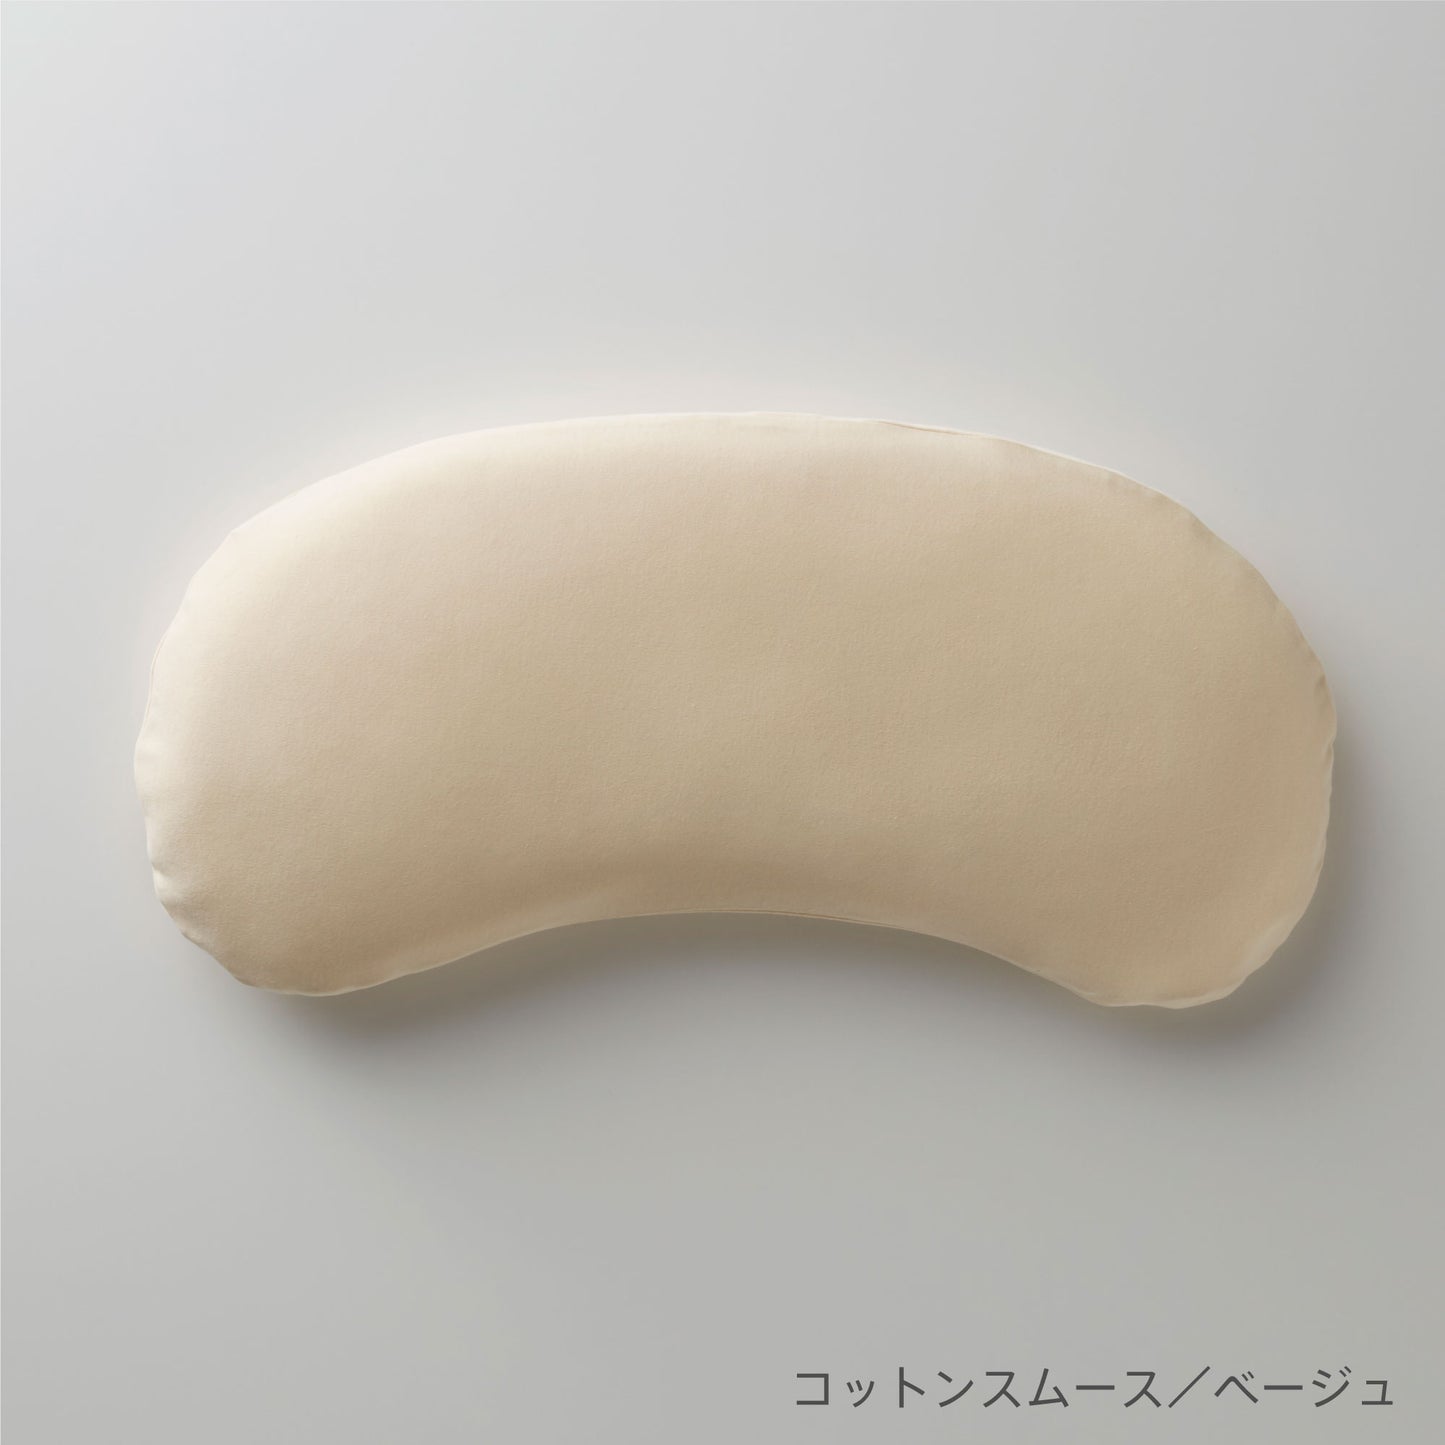 まくらのキタムラ ジムナストキッズ専用枕カバー